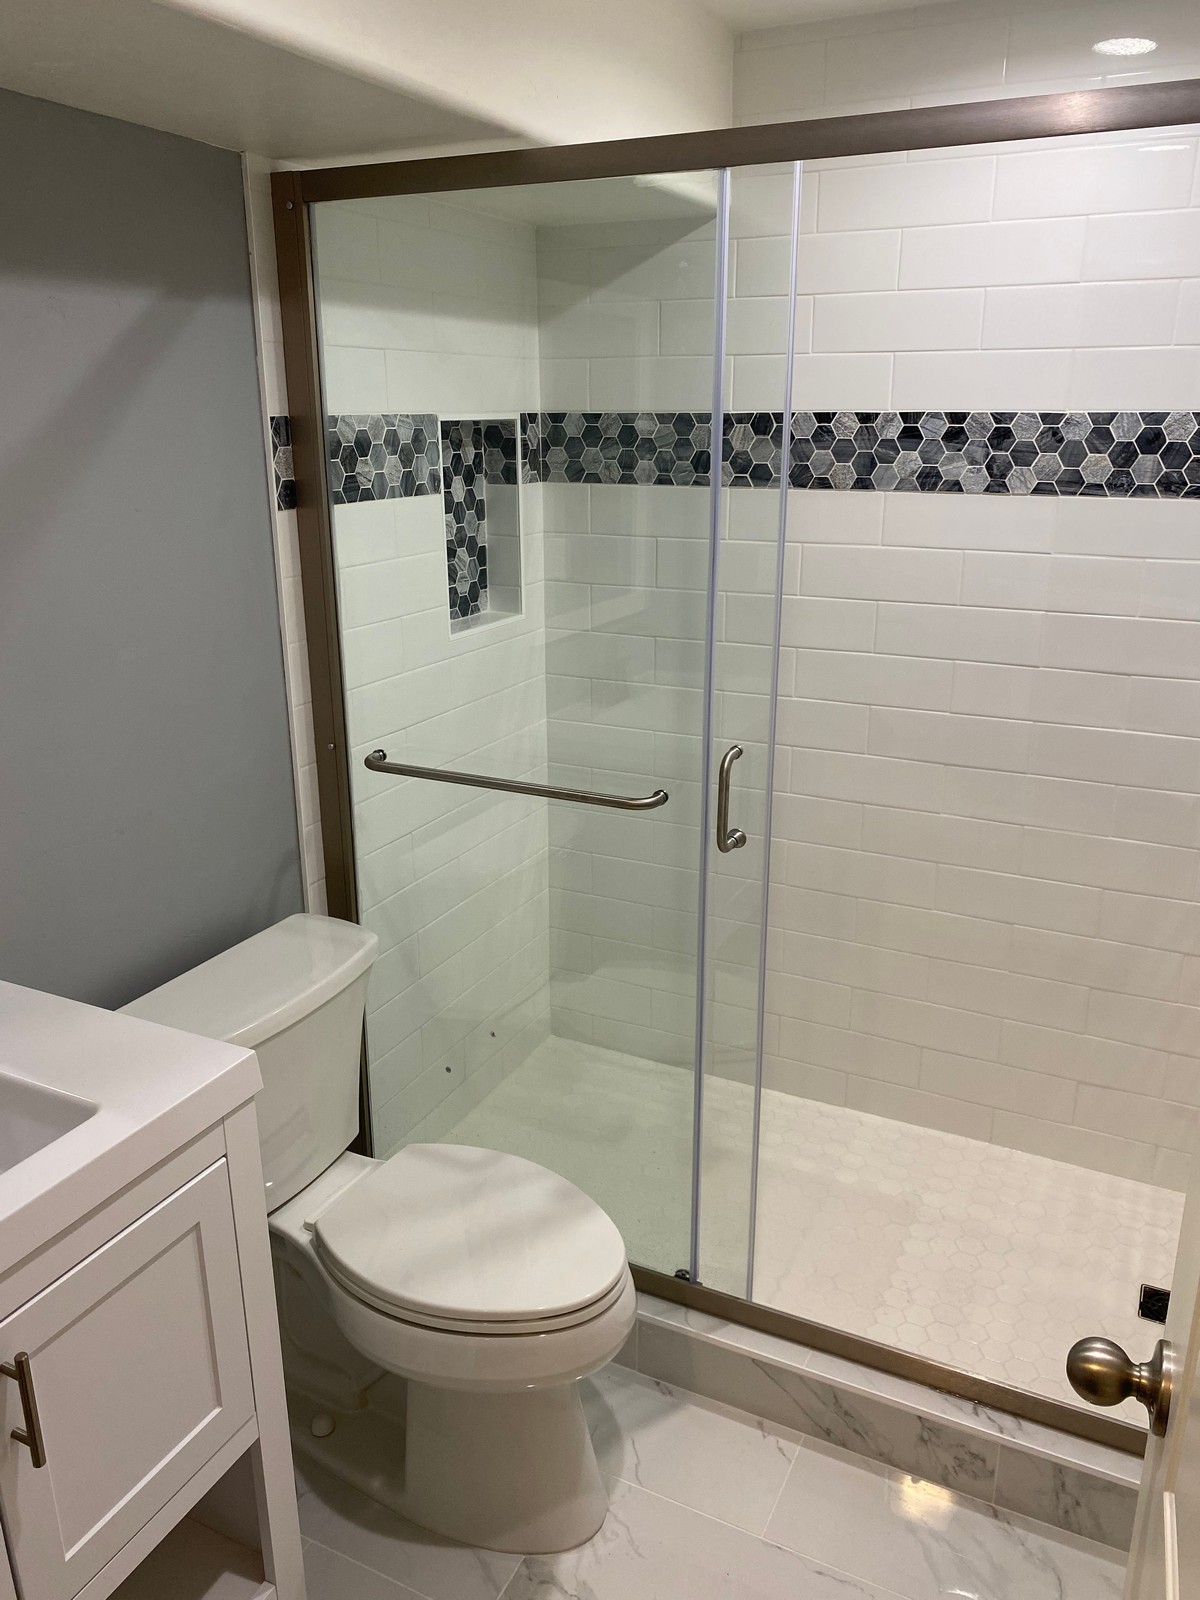 Newly remodelled bathroom by Lehi handyman